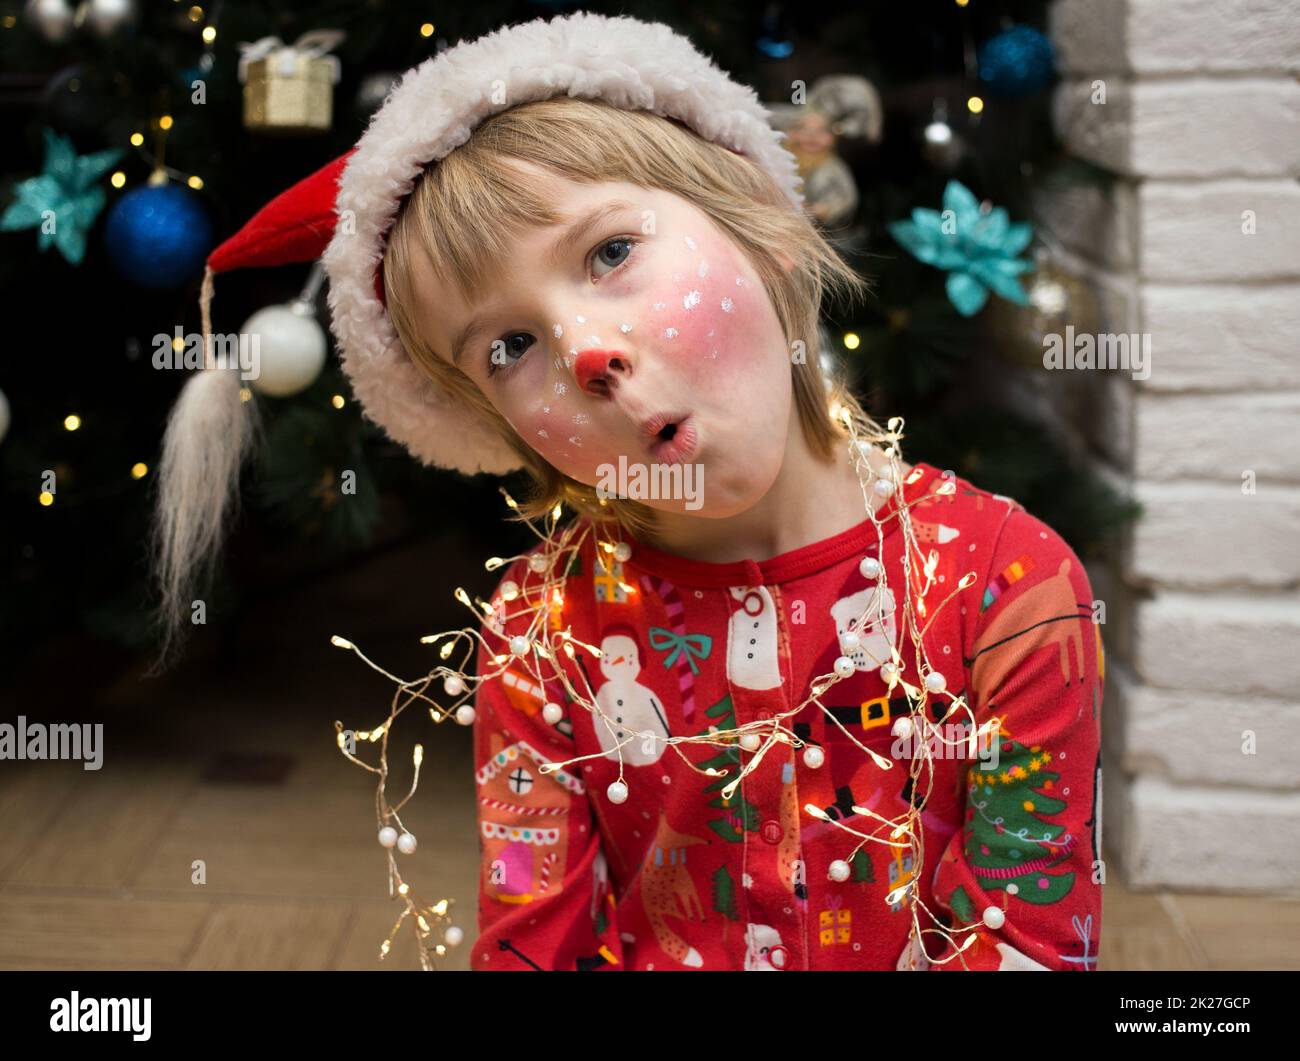 Bambino nei pigiami di Natale, cappello di Santa e un make-up del cervo dipinto sul suo volto rende divertenti volti. Natale, Capodanno, buone vacanze invernali, coccole Foto Stock